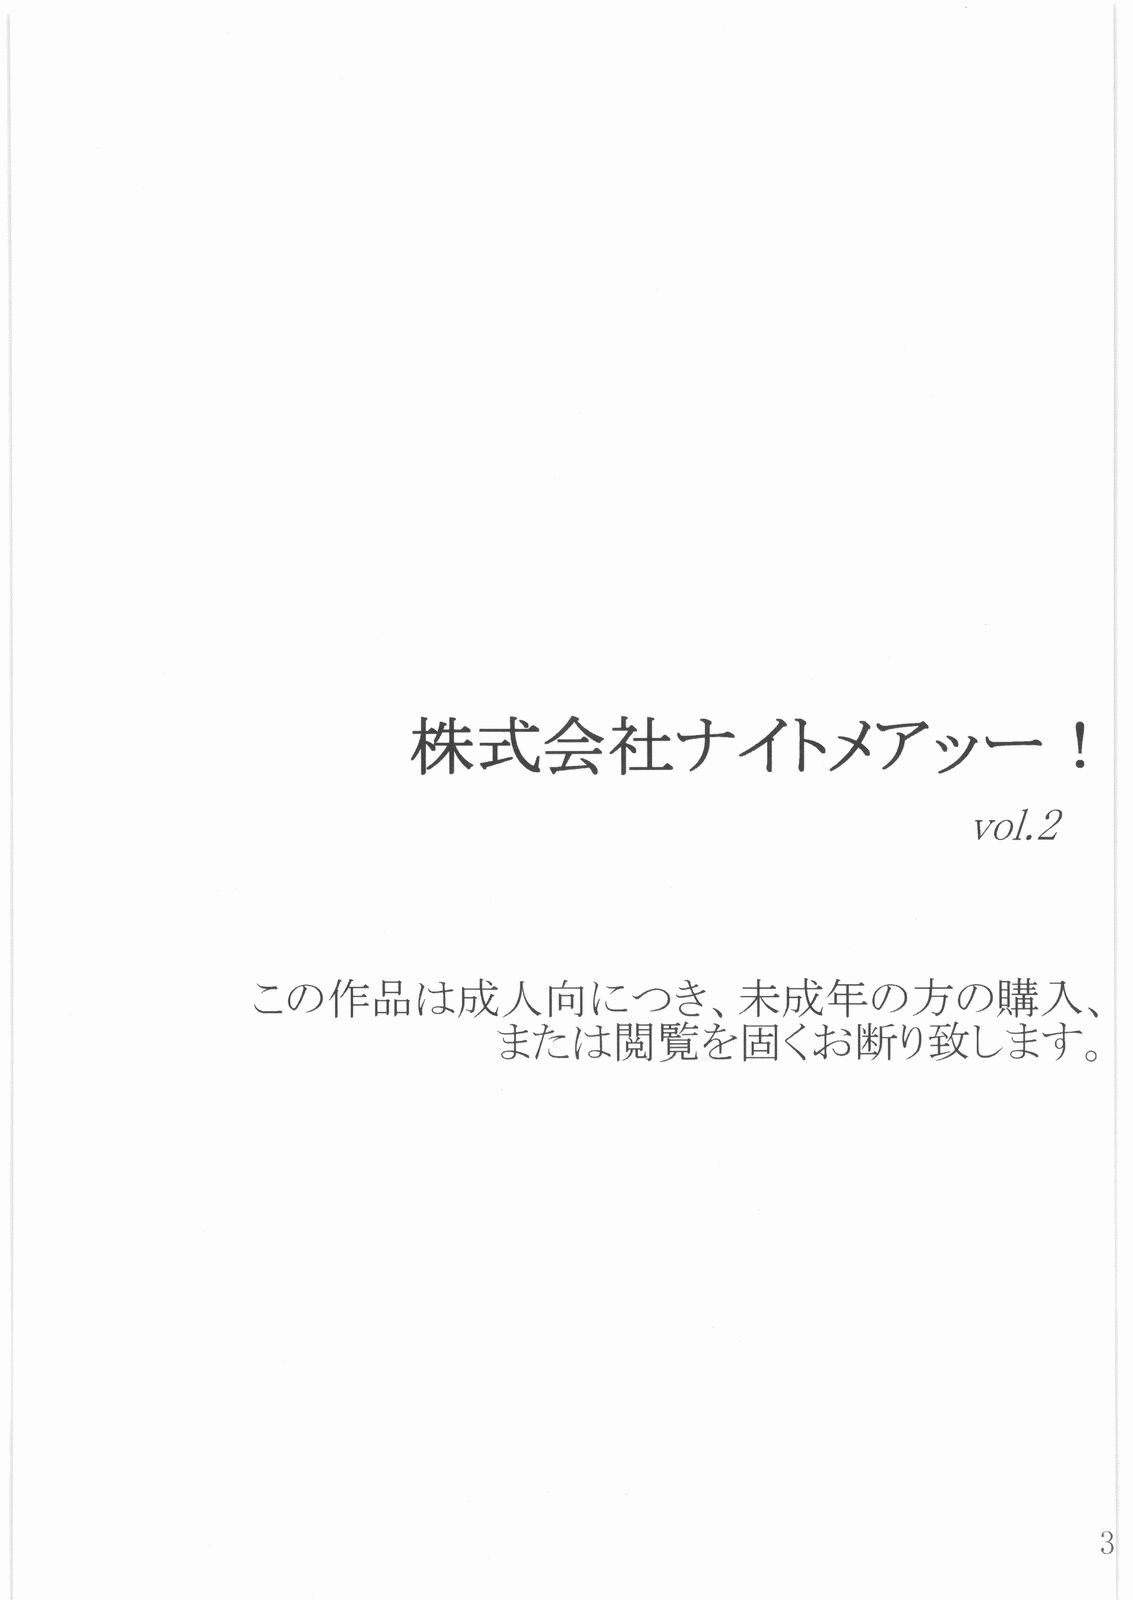 [Darkness GARDEN] Kabushikigaisha Nightmare!  vol.2 (Yes! Precure 5) [Darkness GARDEN] 株式会社ナイトメアッー！ vol.2 (Yes! プリキュア5)